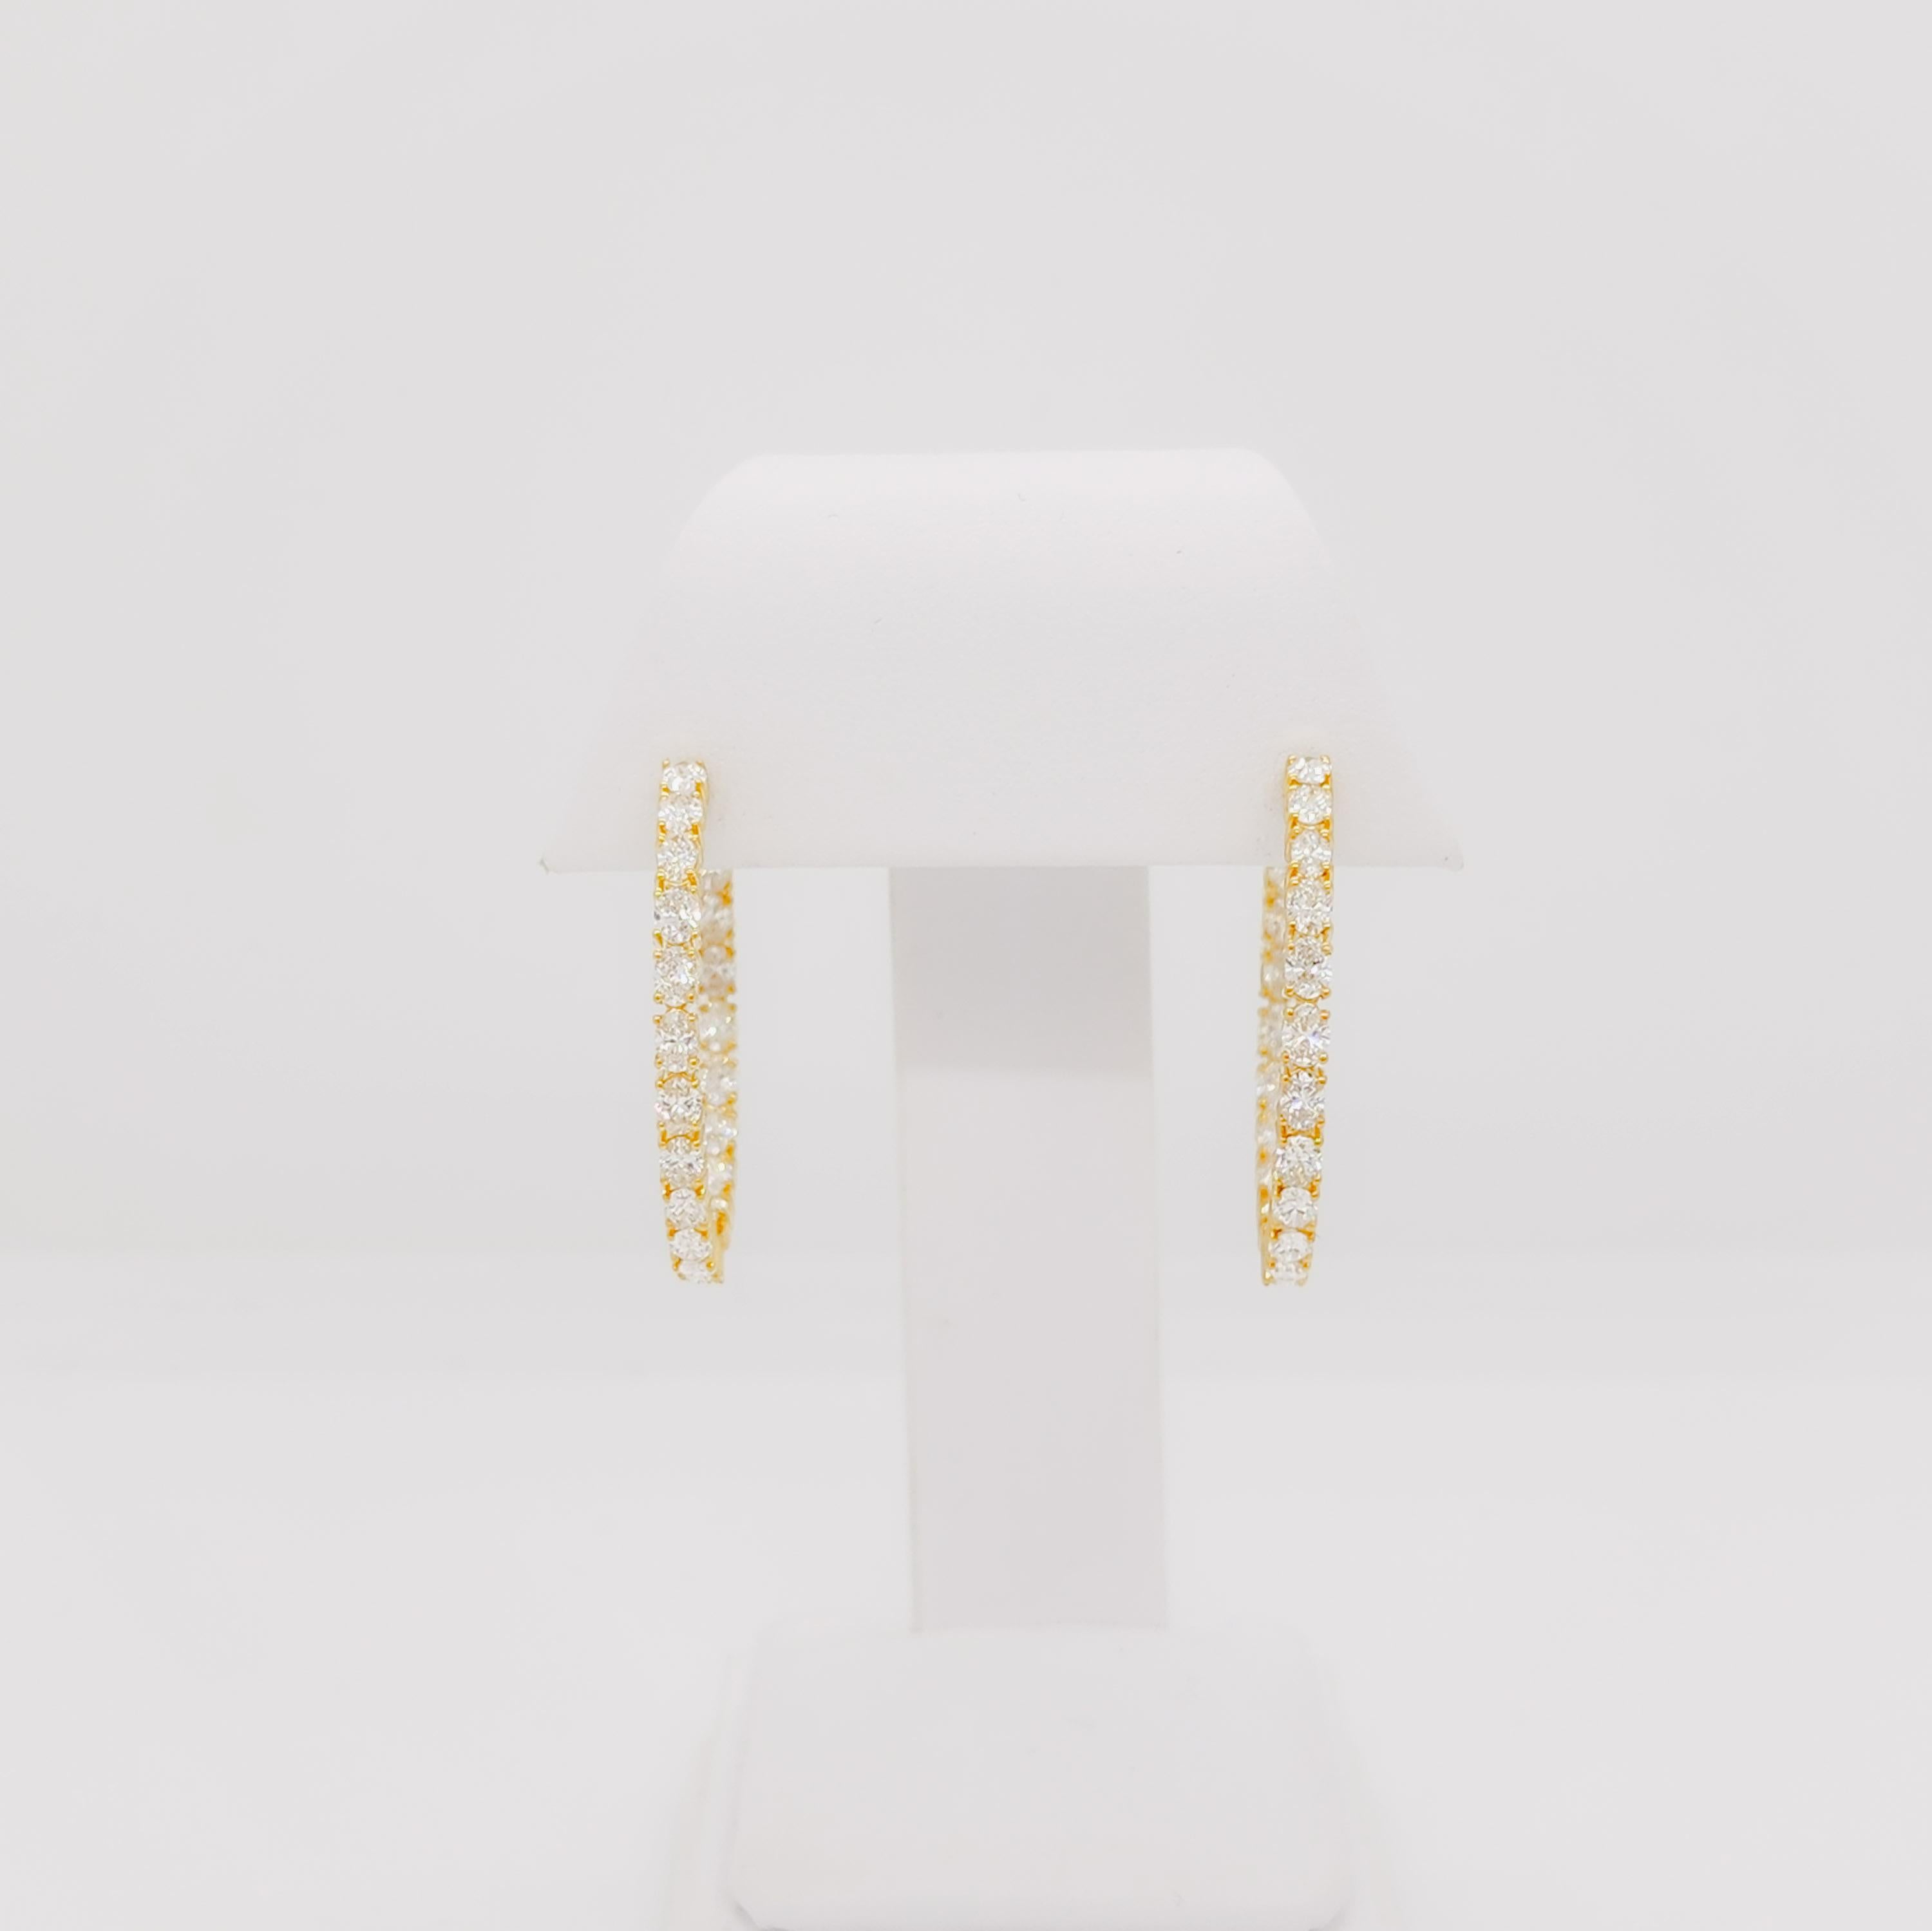 Wunderschöne 4,58 ct. weiße Diamant-Ovale, insgesamt 42 Steine.  Handgefertigt in 18k Gelbgold.  